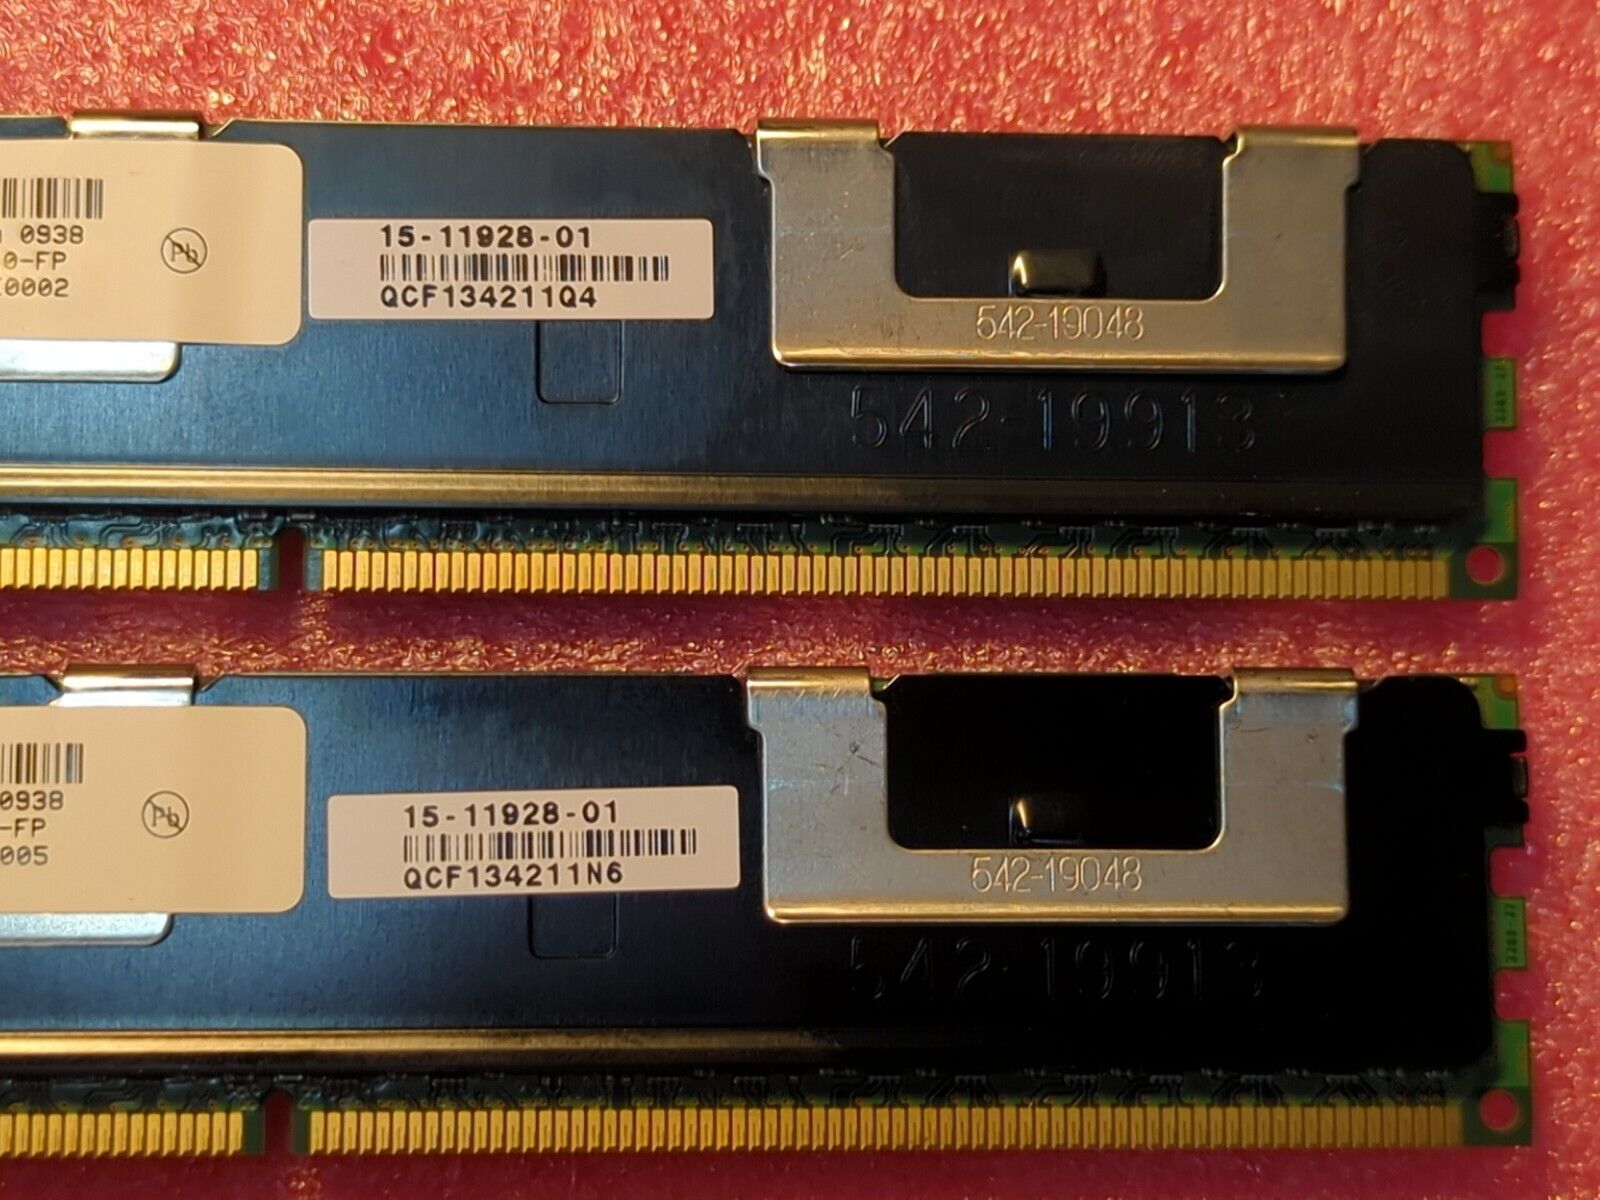 16GB Kit Micron 8GB DDR3 4Rx4 PC3-8500R Server Memory DIMM MT72JSZS1G72PZ